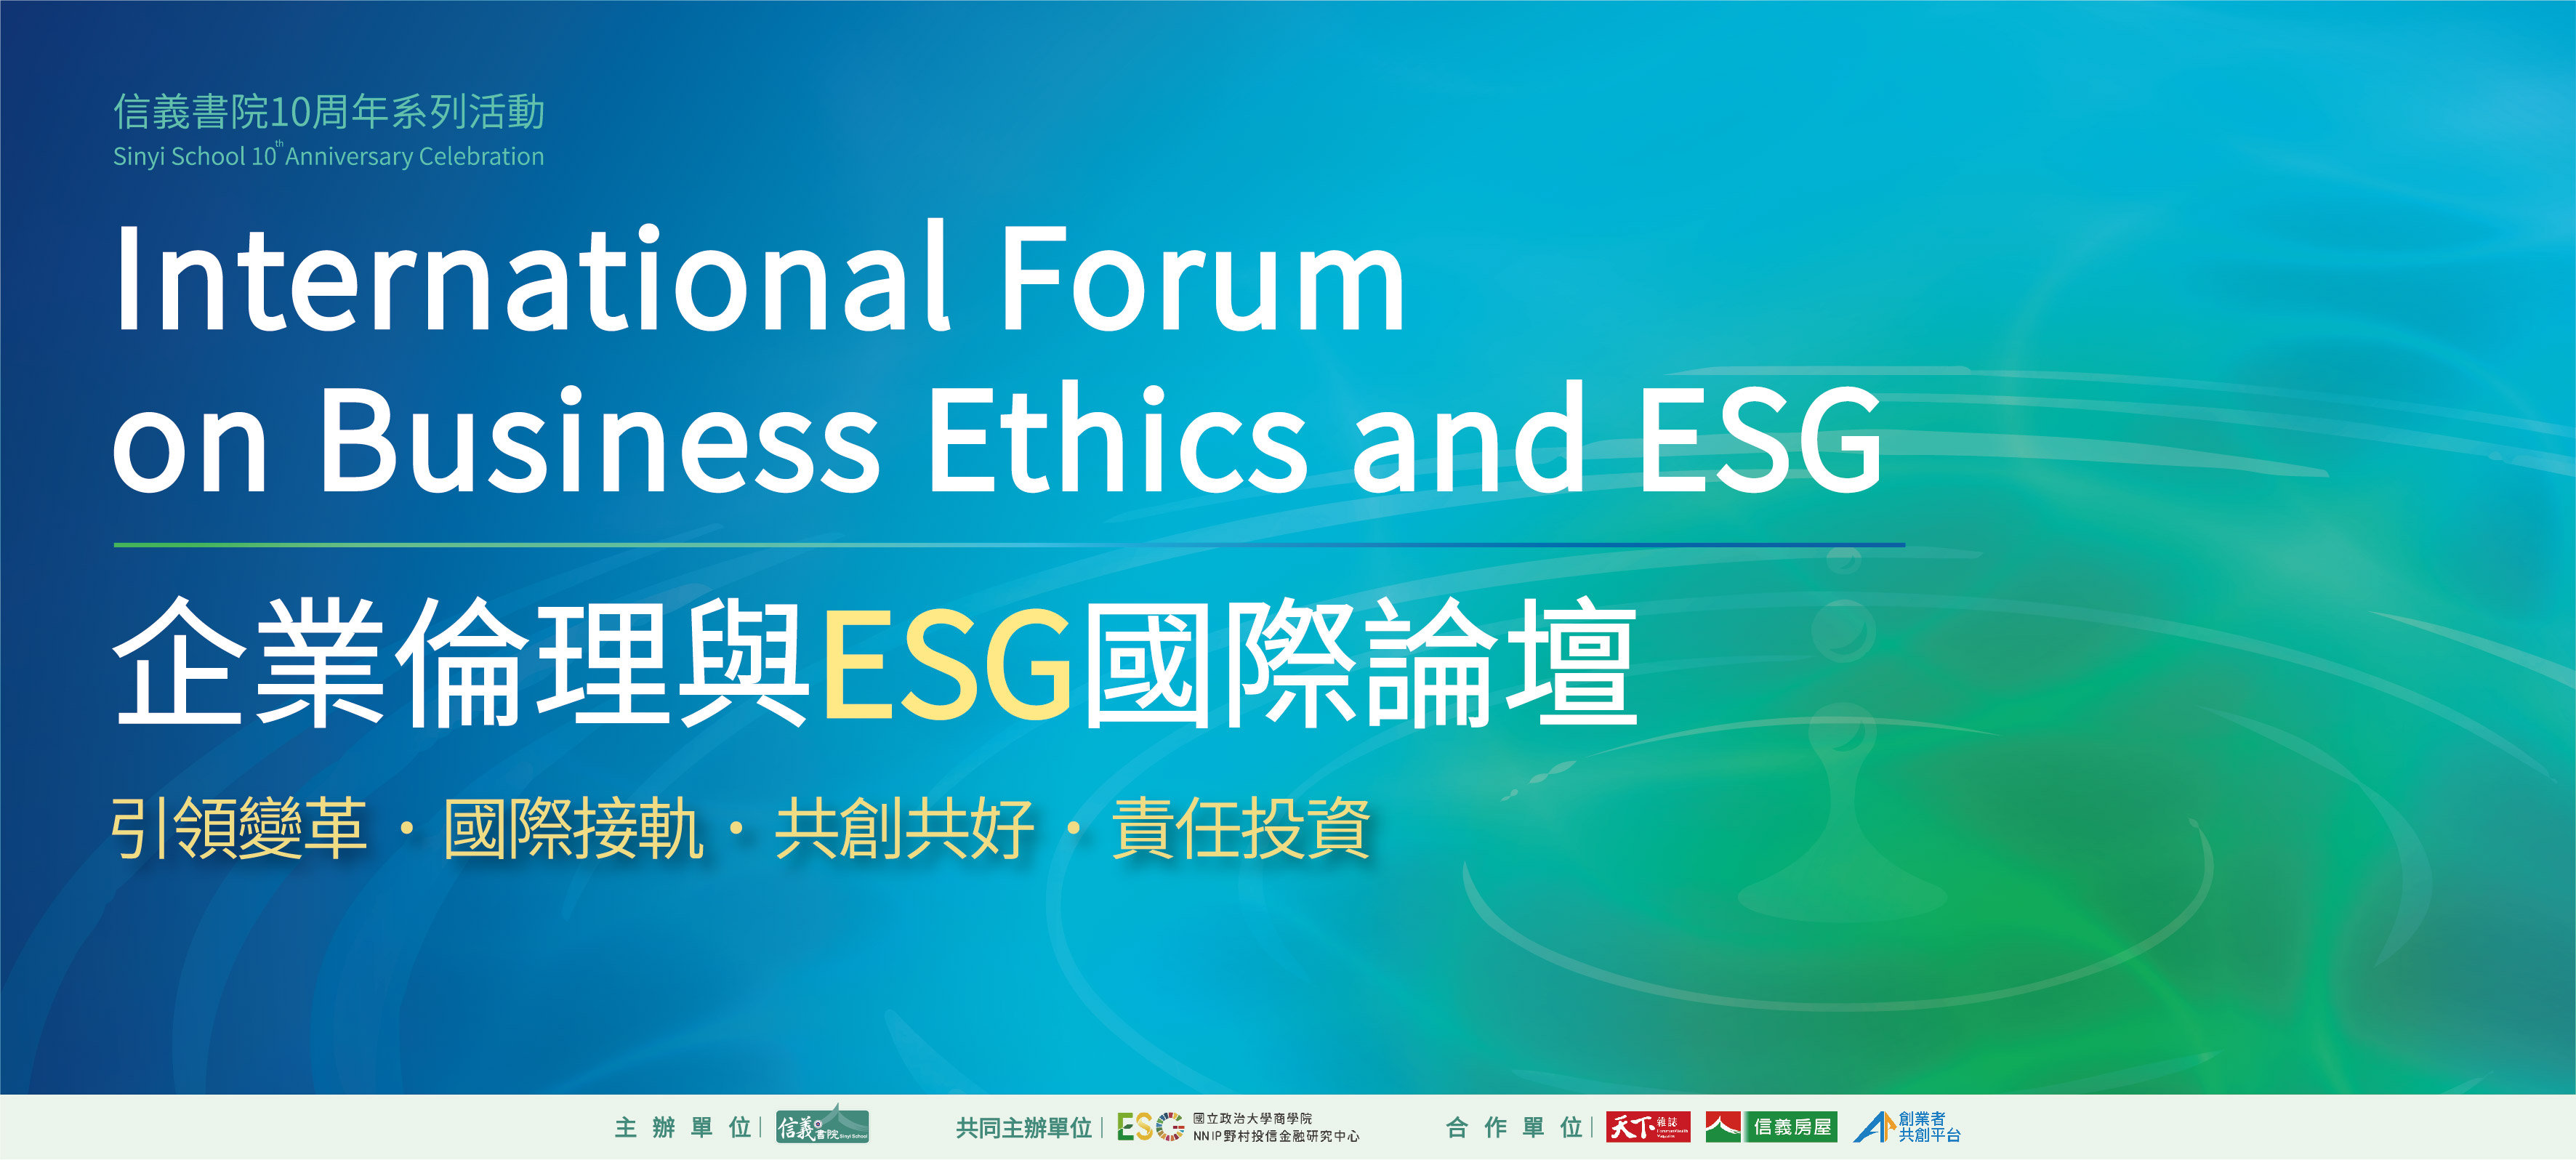 企業倫理與ESG國際論壇